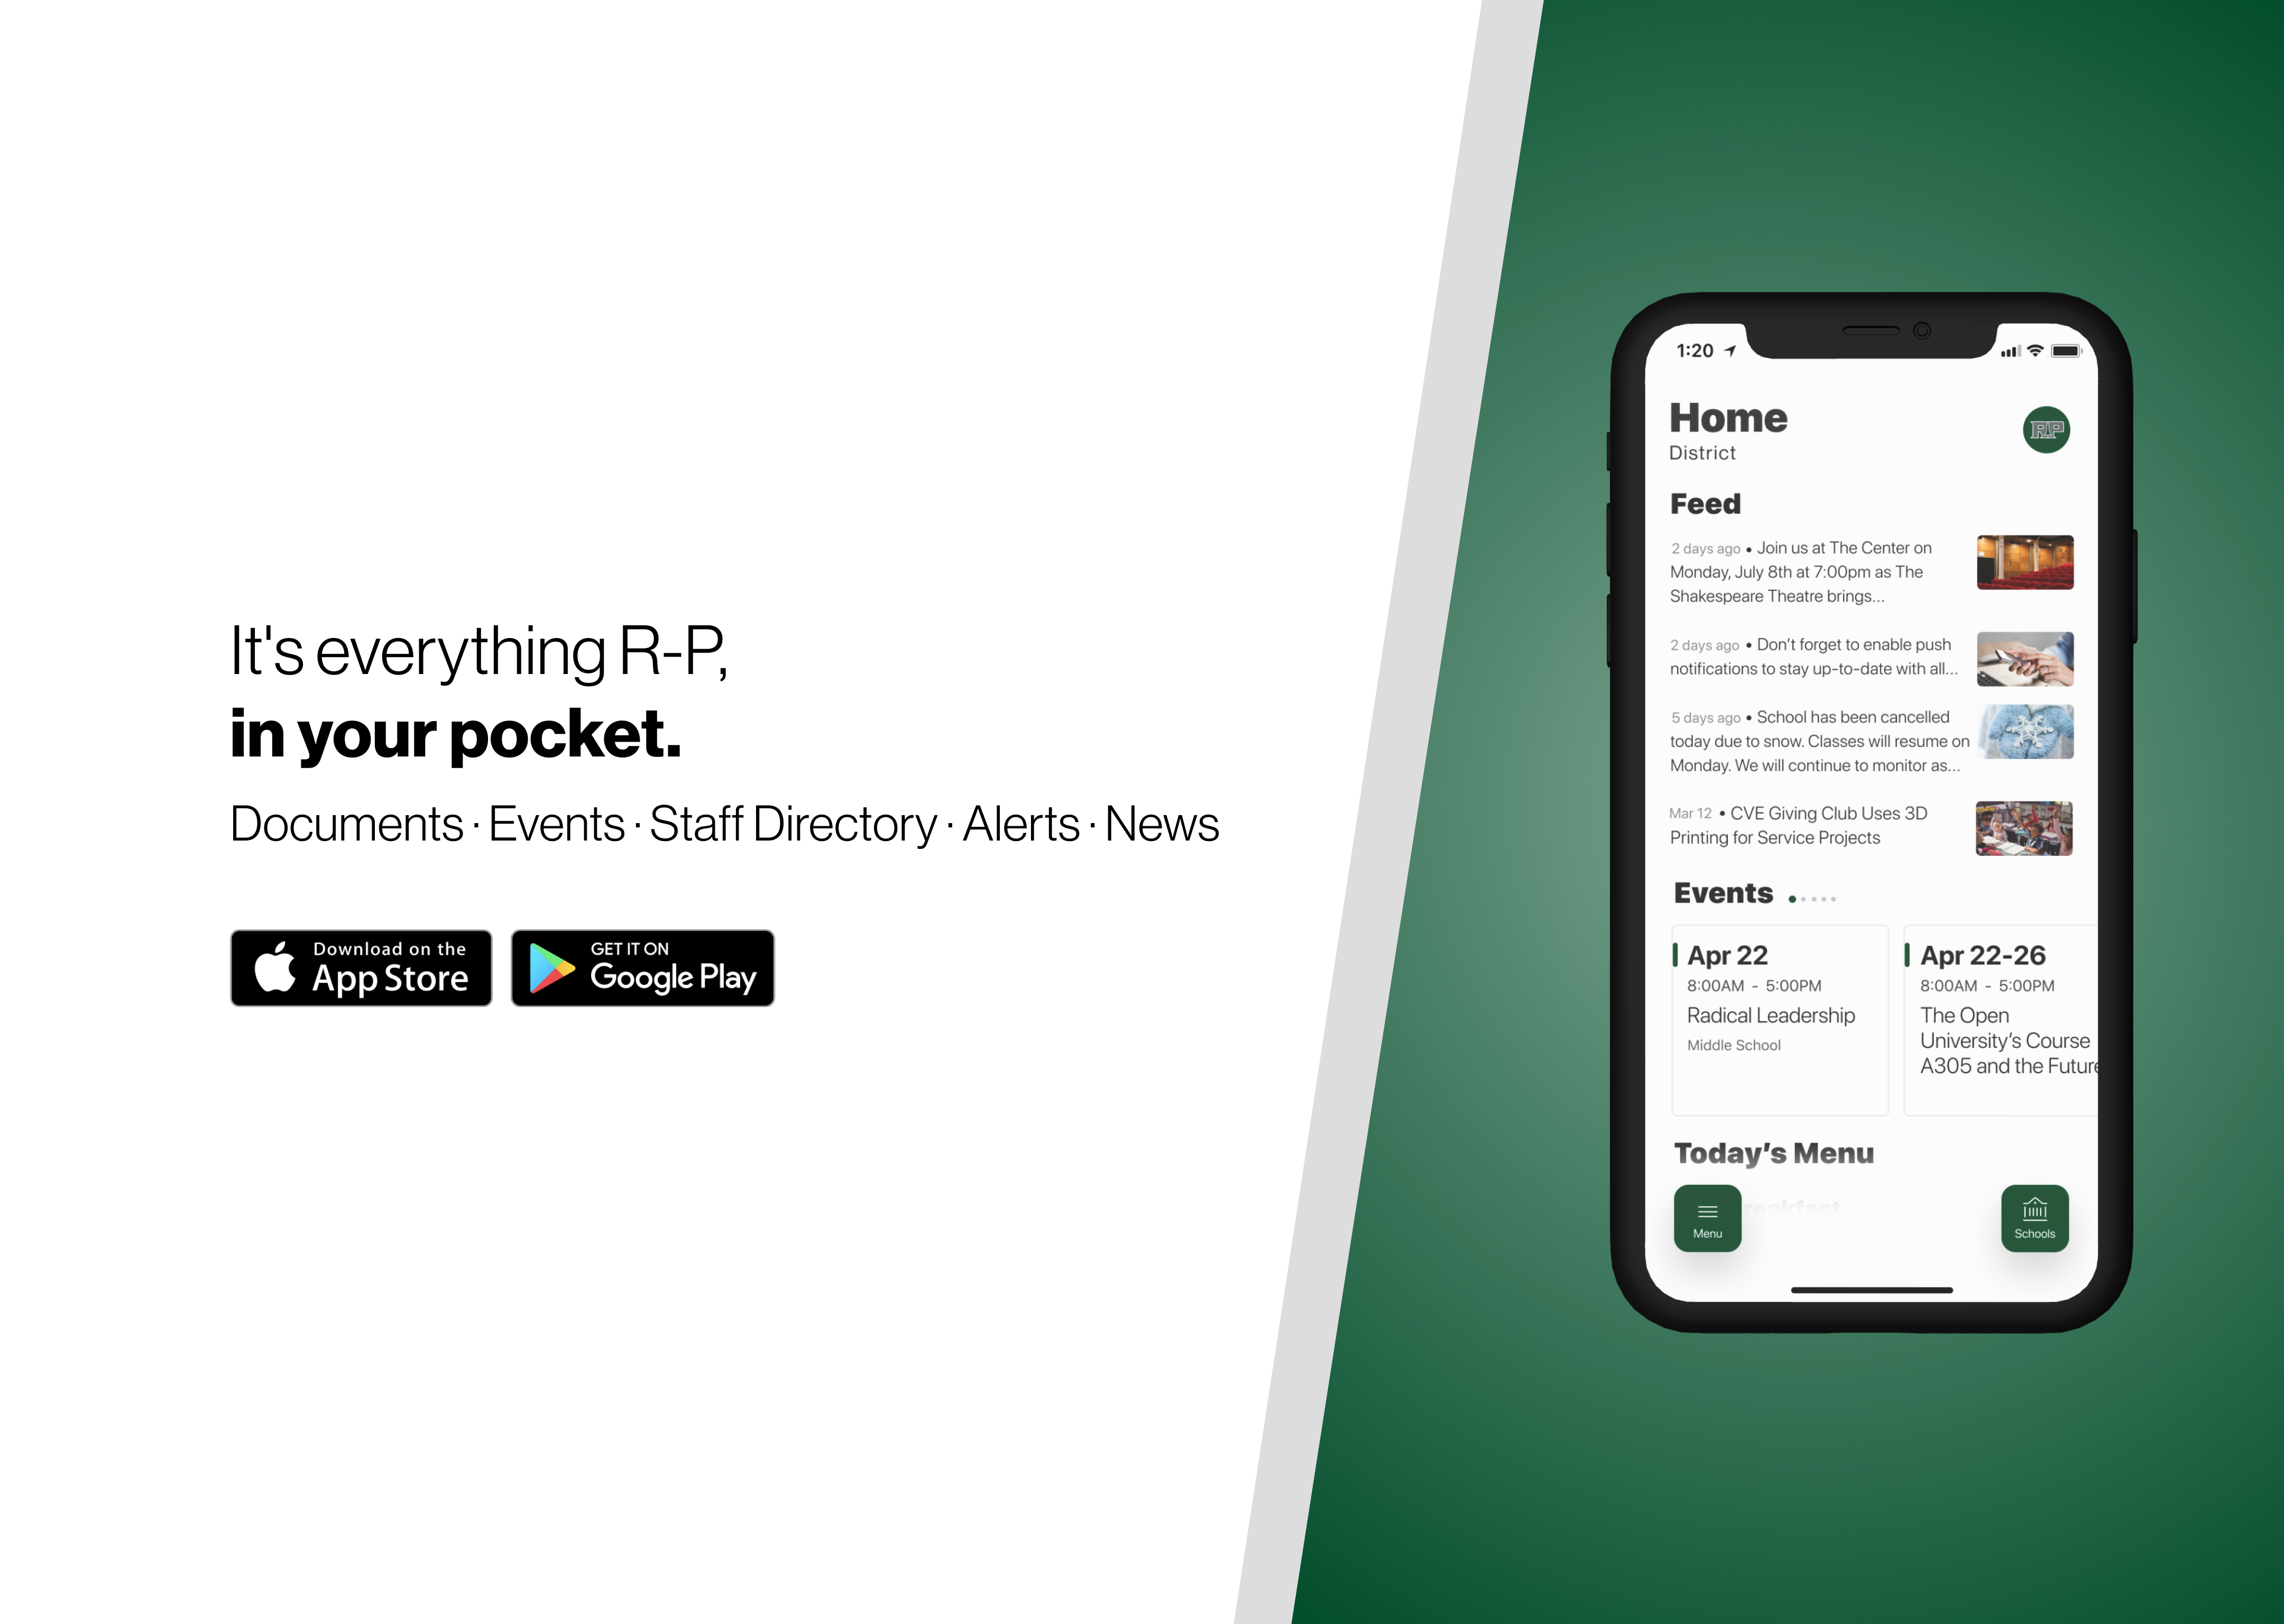 Brasil Mobile RP – Apps on Google Play